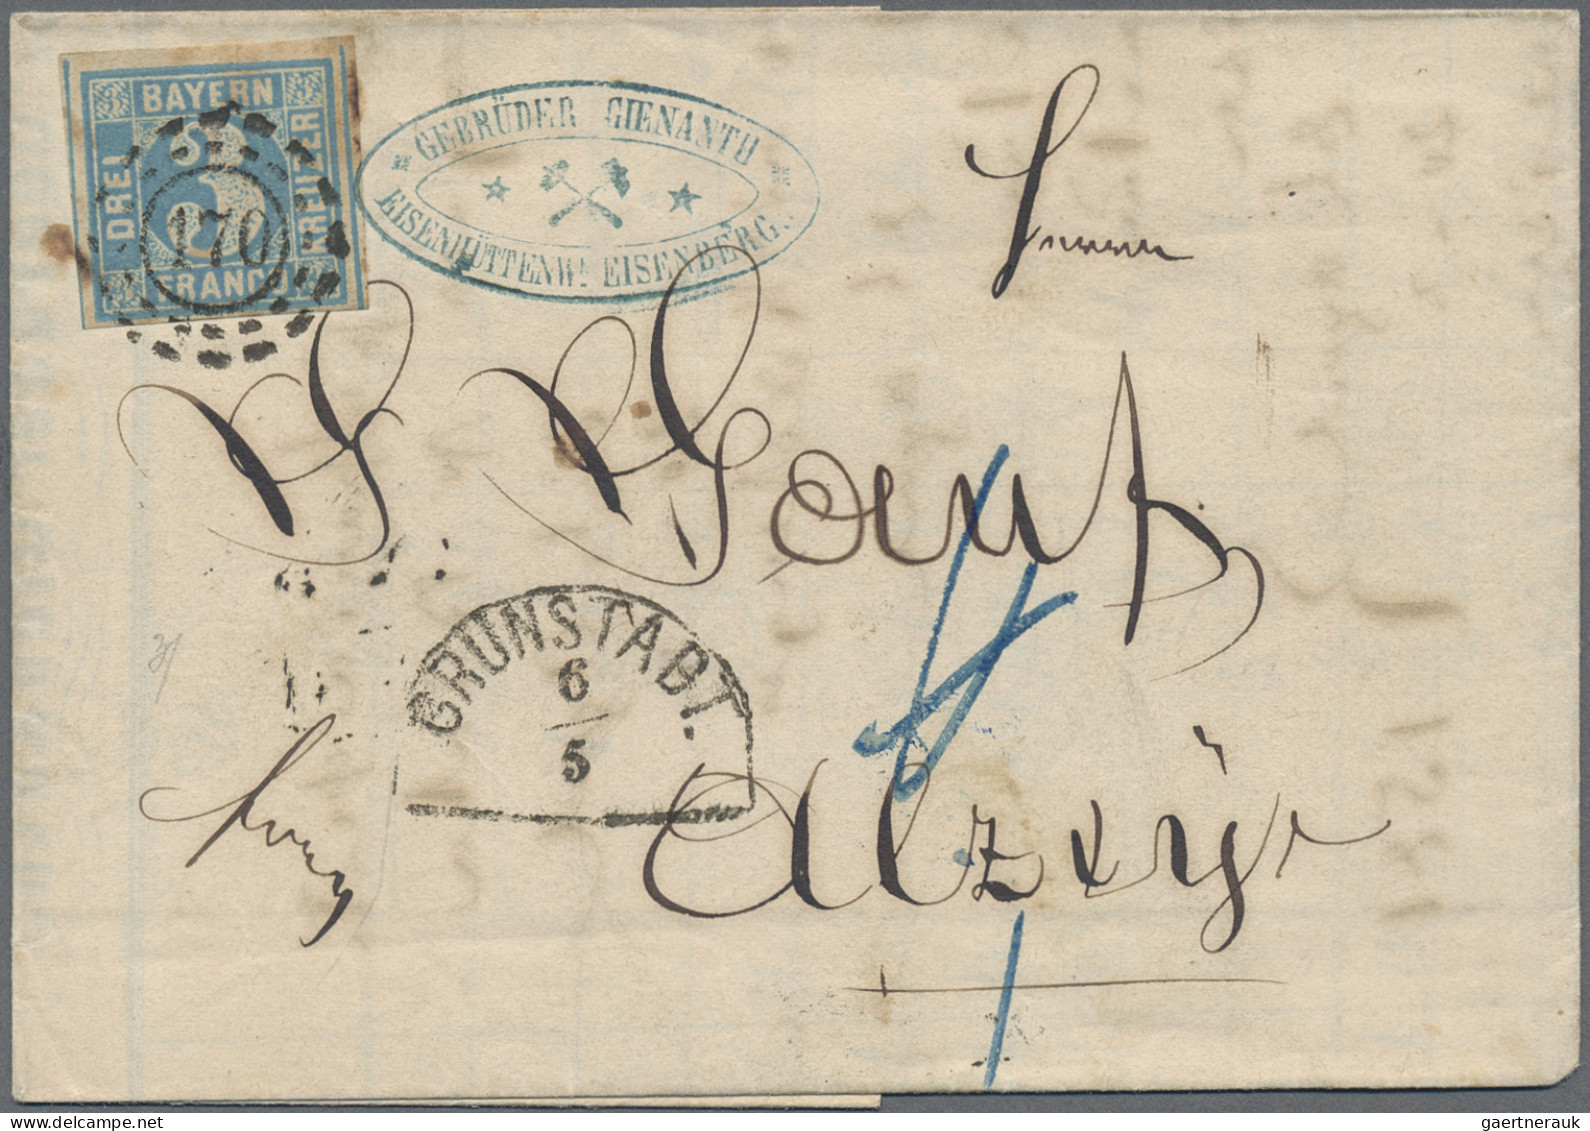 Bayern - Marken und Briefe: 1852/1861, Quadratausgabe 3 Kr. blau, Partie von 28